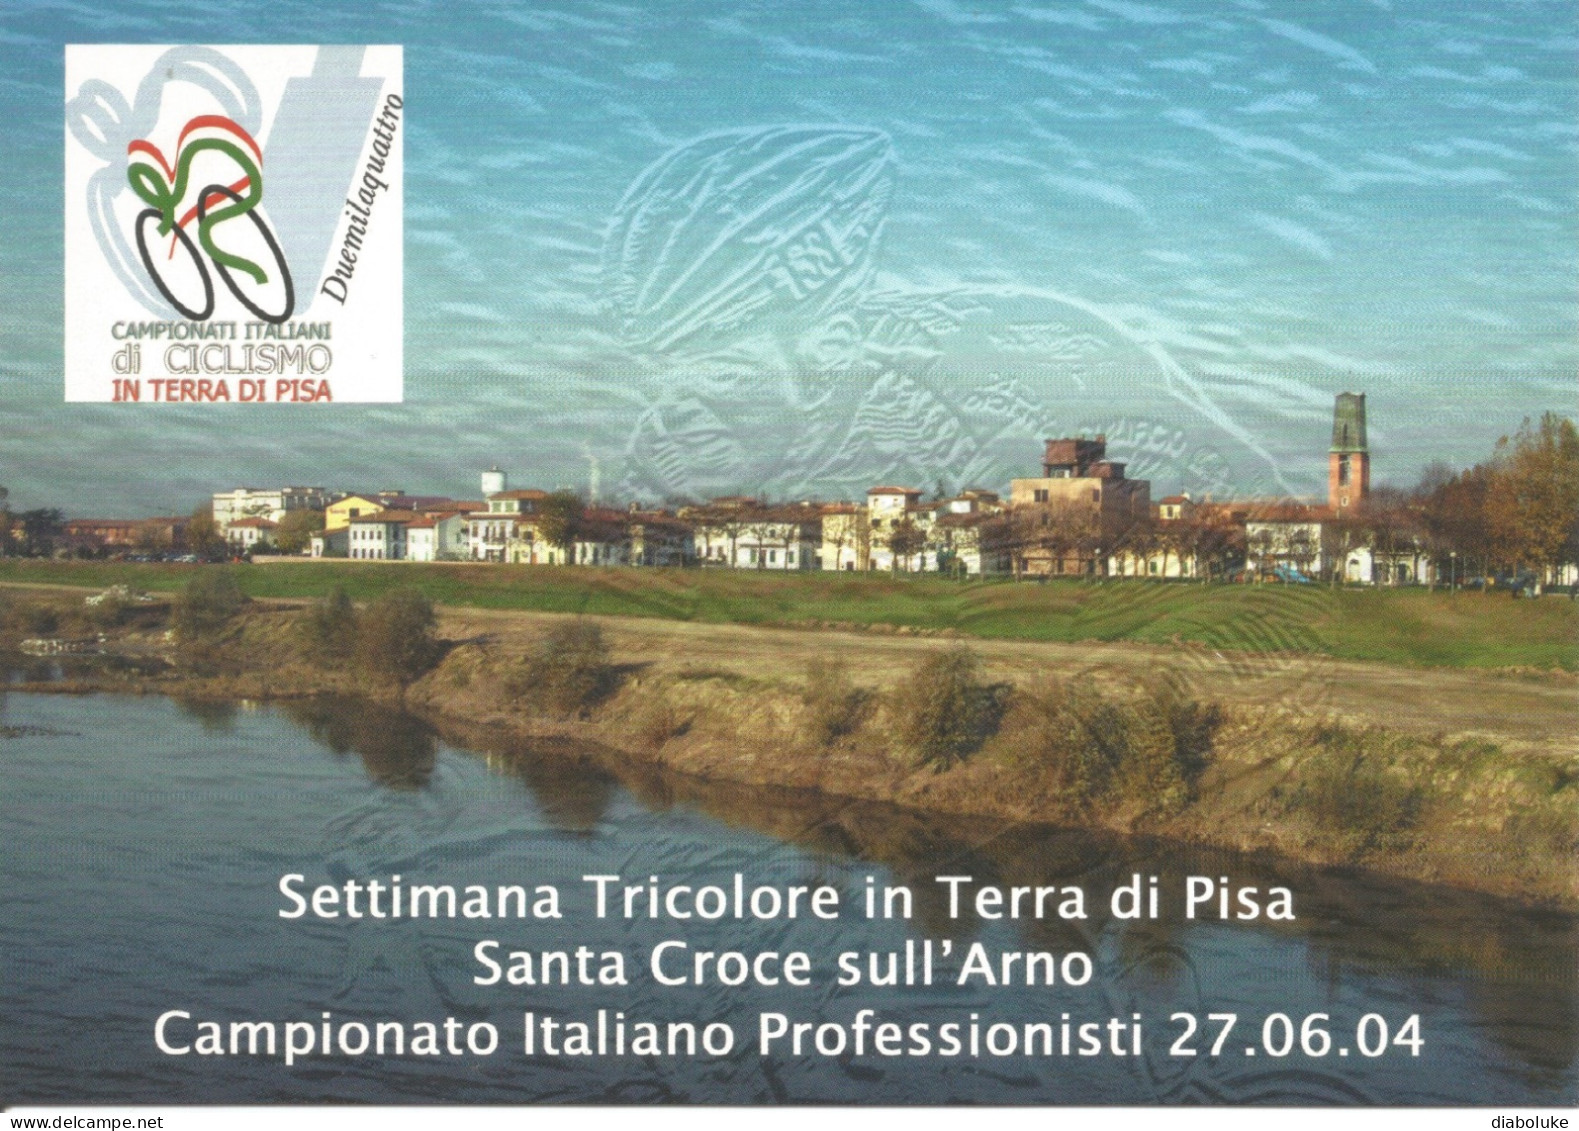 (VARIOUS) SETTIMANA TRICOLORE IN TERRA DI PISA, SANTA CROCE SULL'ARNO, 27/6/2004 - Cartolina Nuova - Demonstrationen